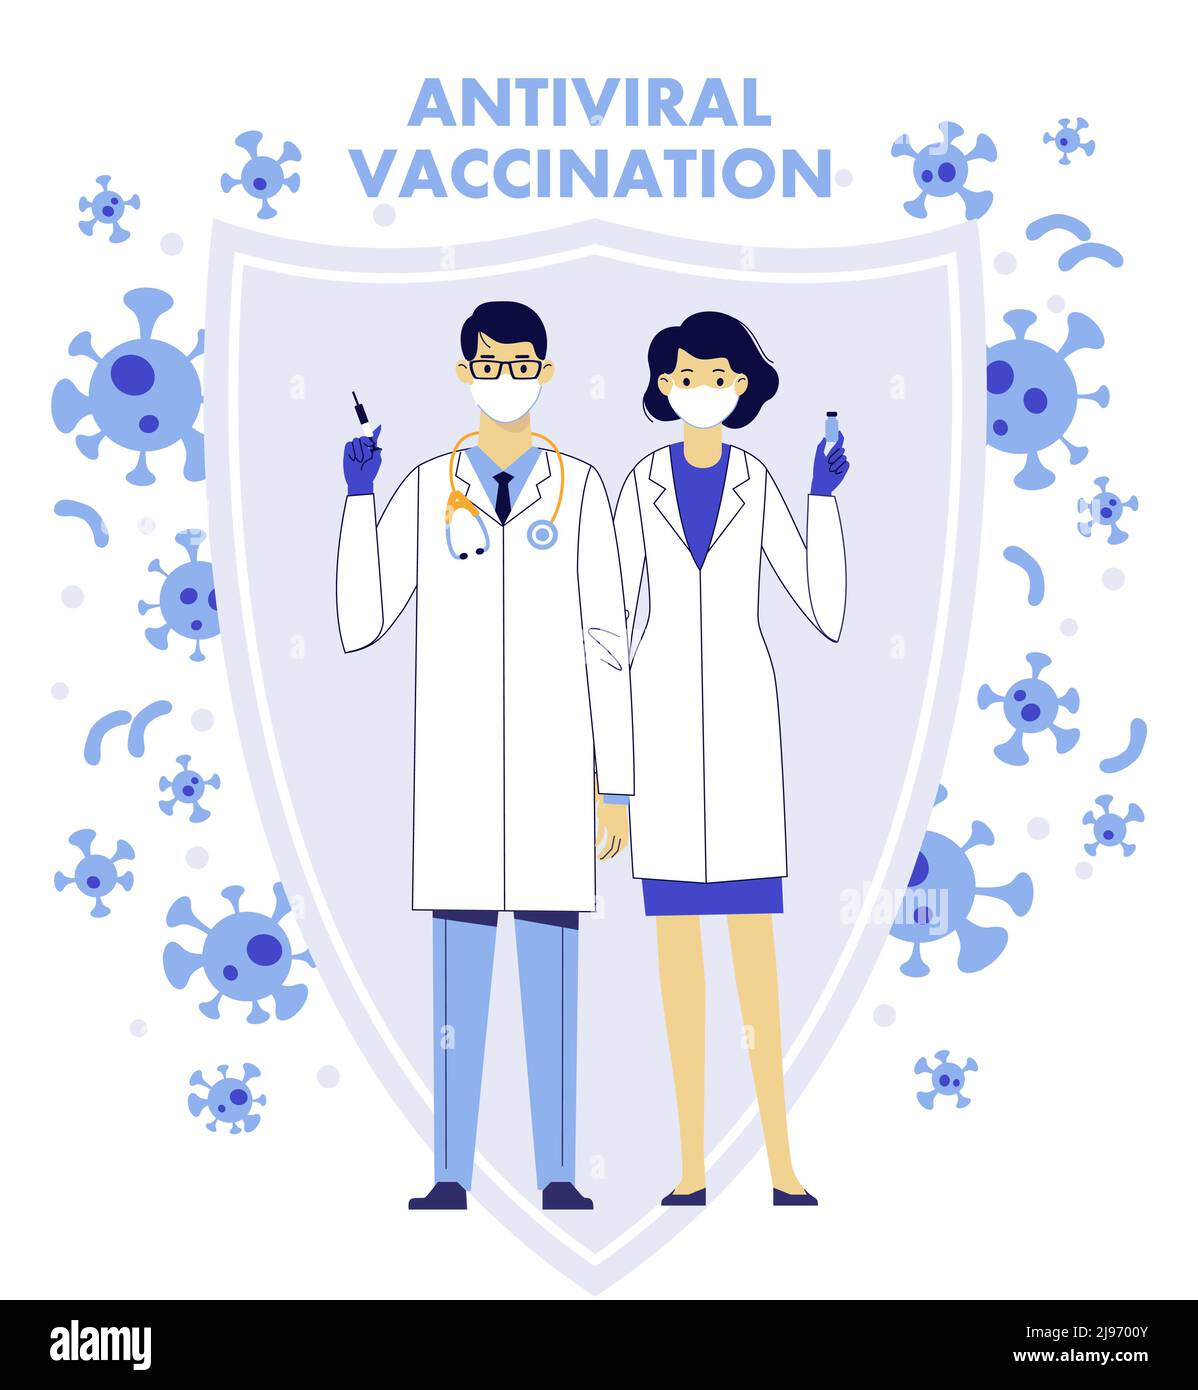 Medizinteam, junge Ärzte Mann und Frau mit Spritze und Impfstoff auf Schildhintergrund. Stock Vektor